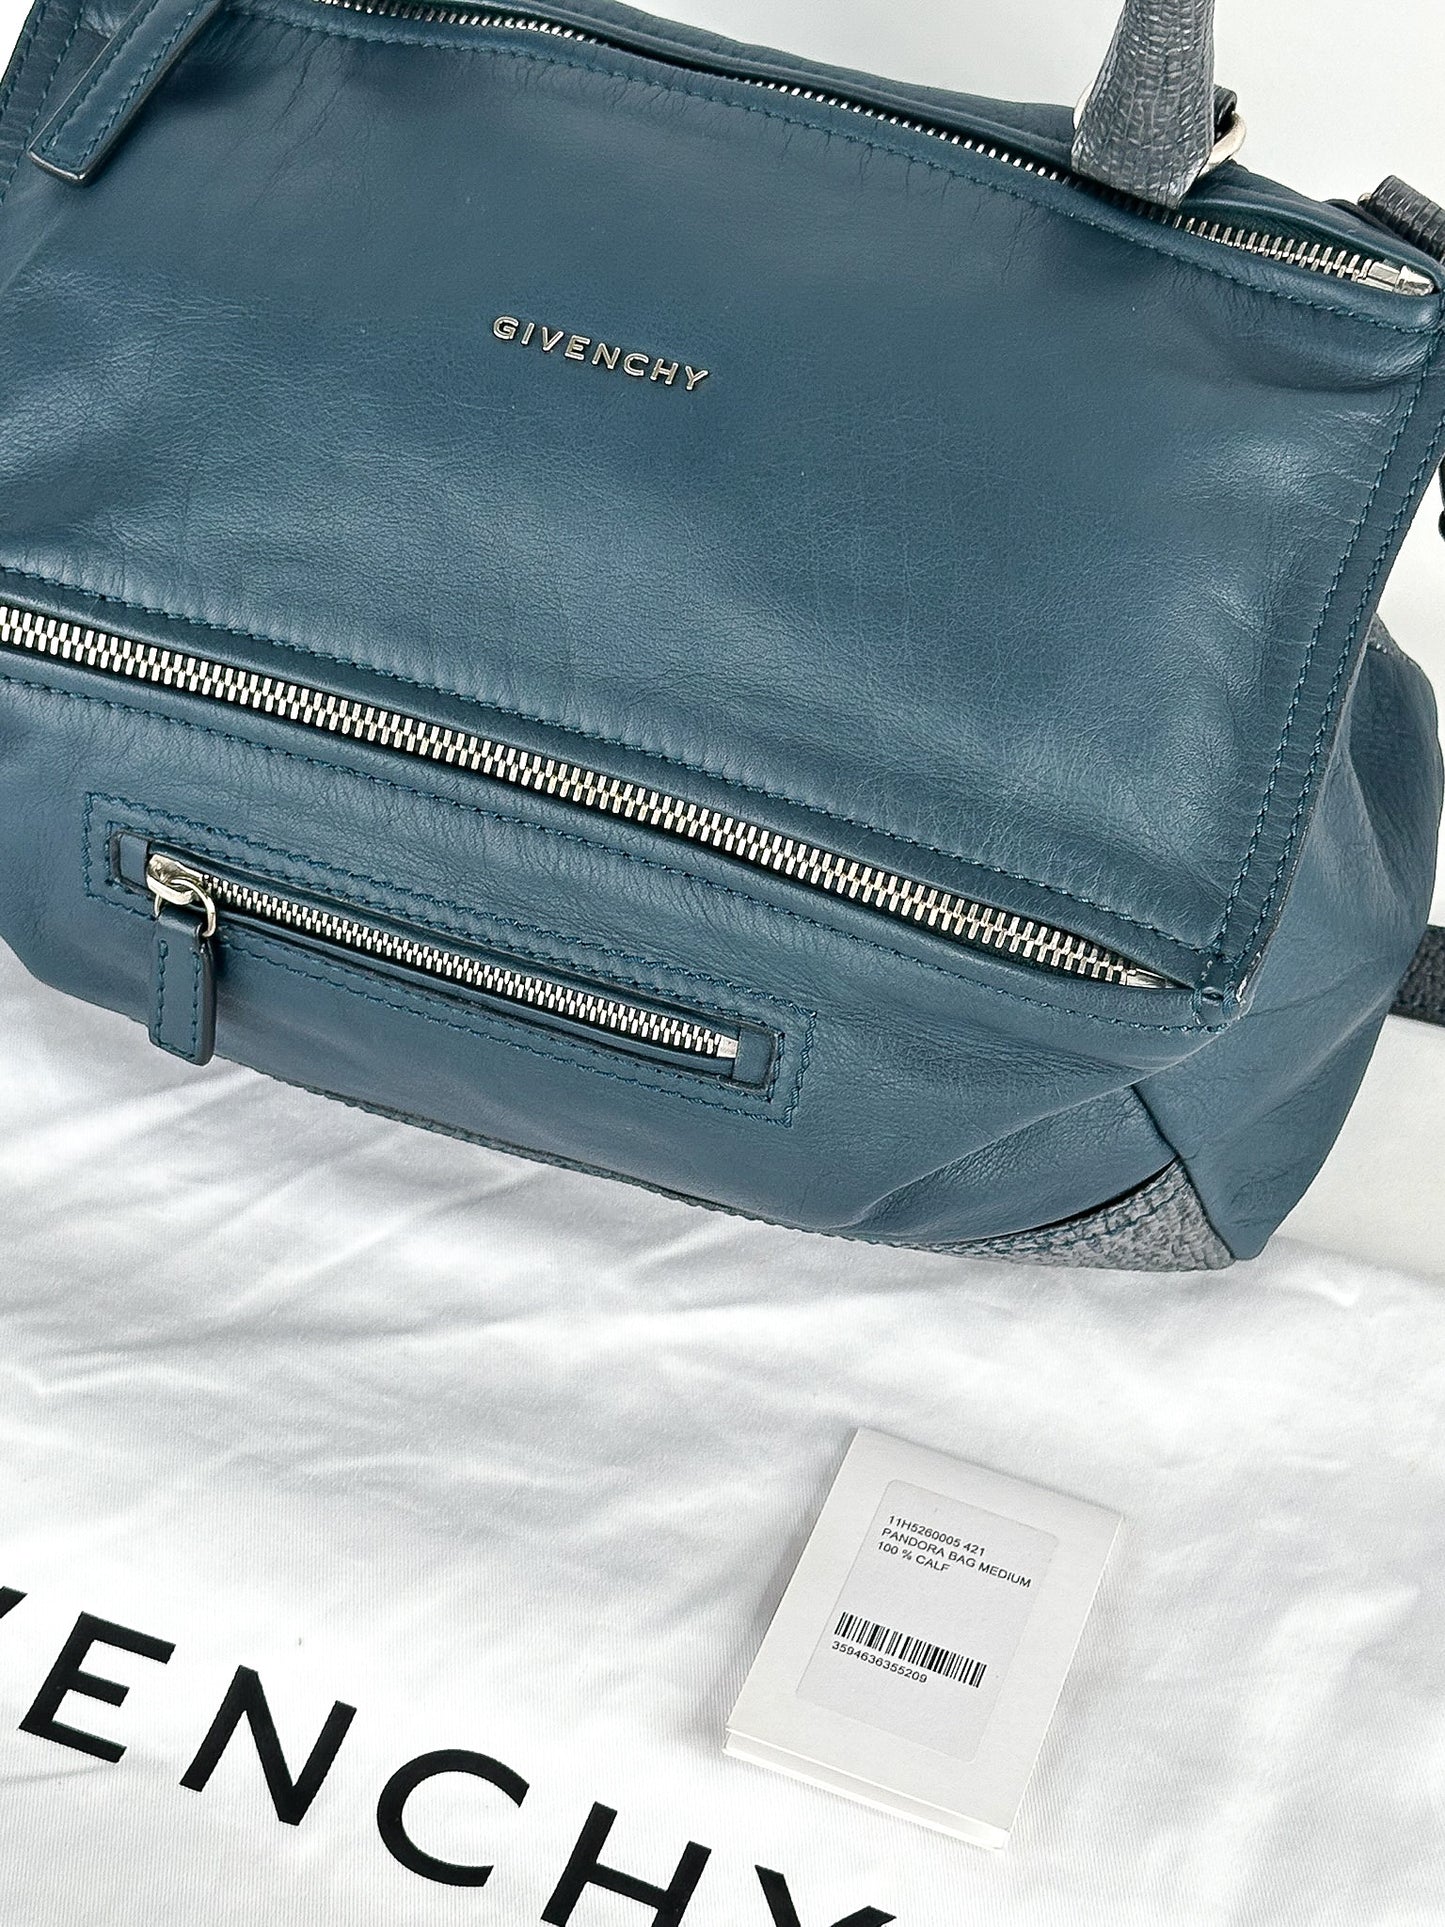 Givenchy Pandora Bag Medium